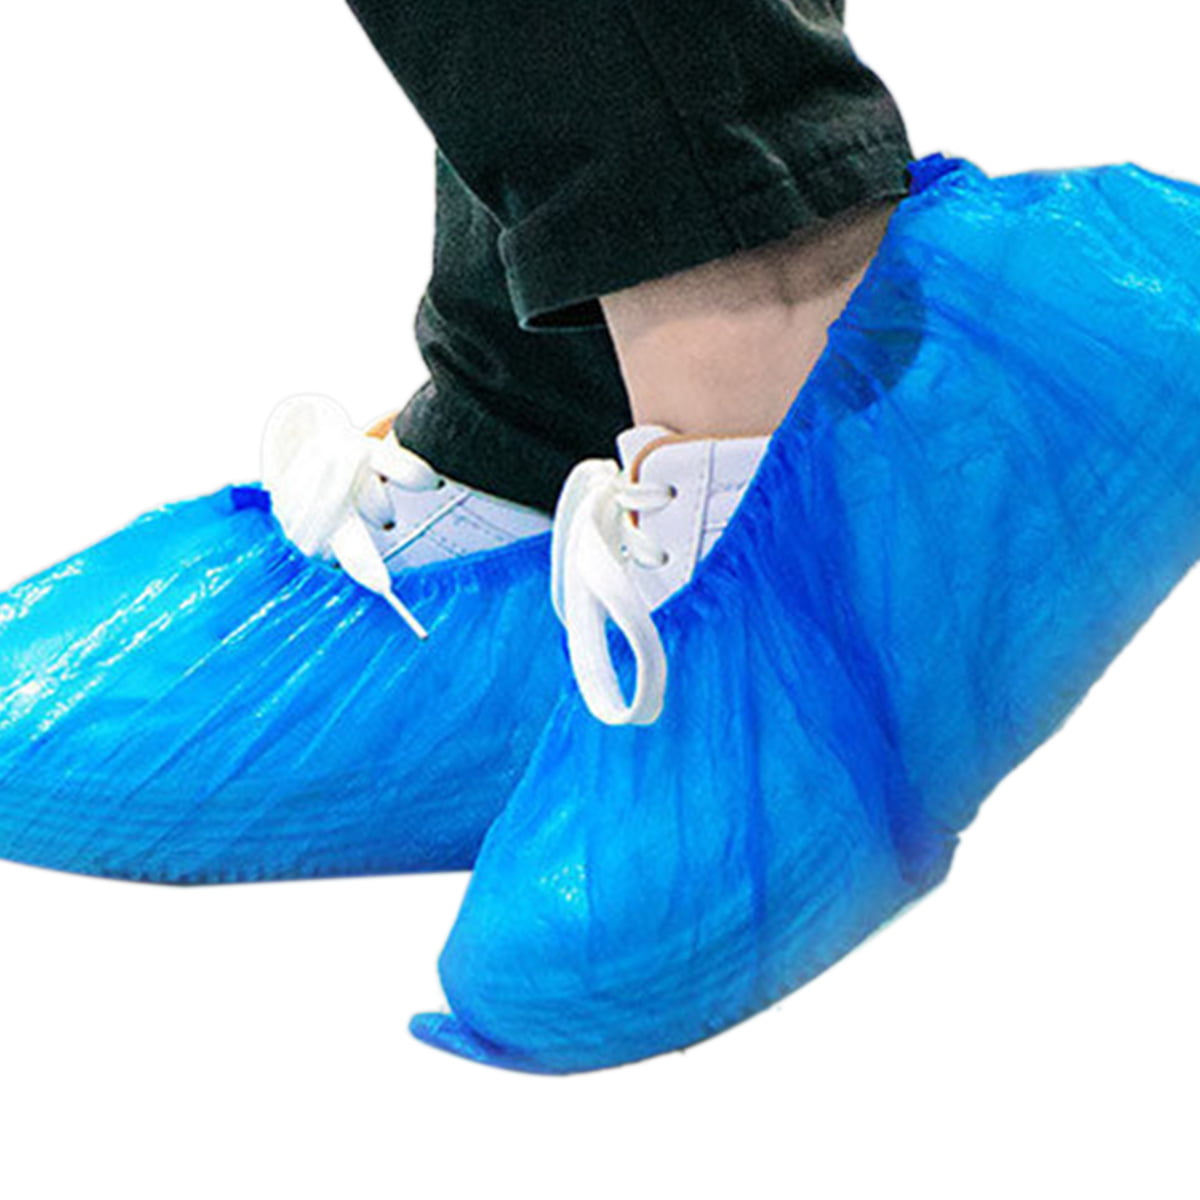 Disposable Plastic Overshoes Shoes Covers Carpet Floor Shoe Protectors 30 PC for sale online 